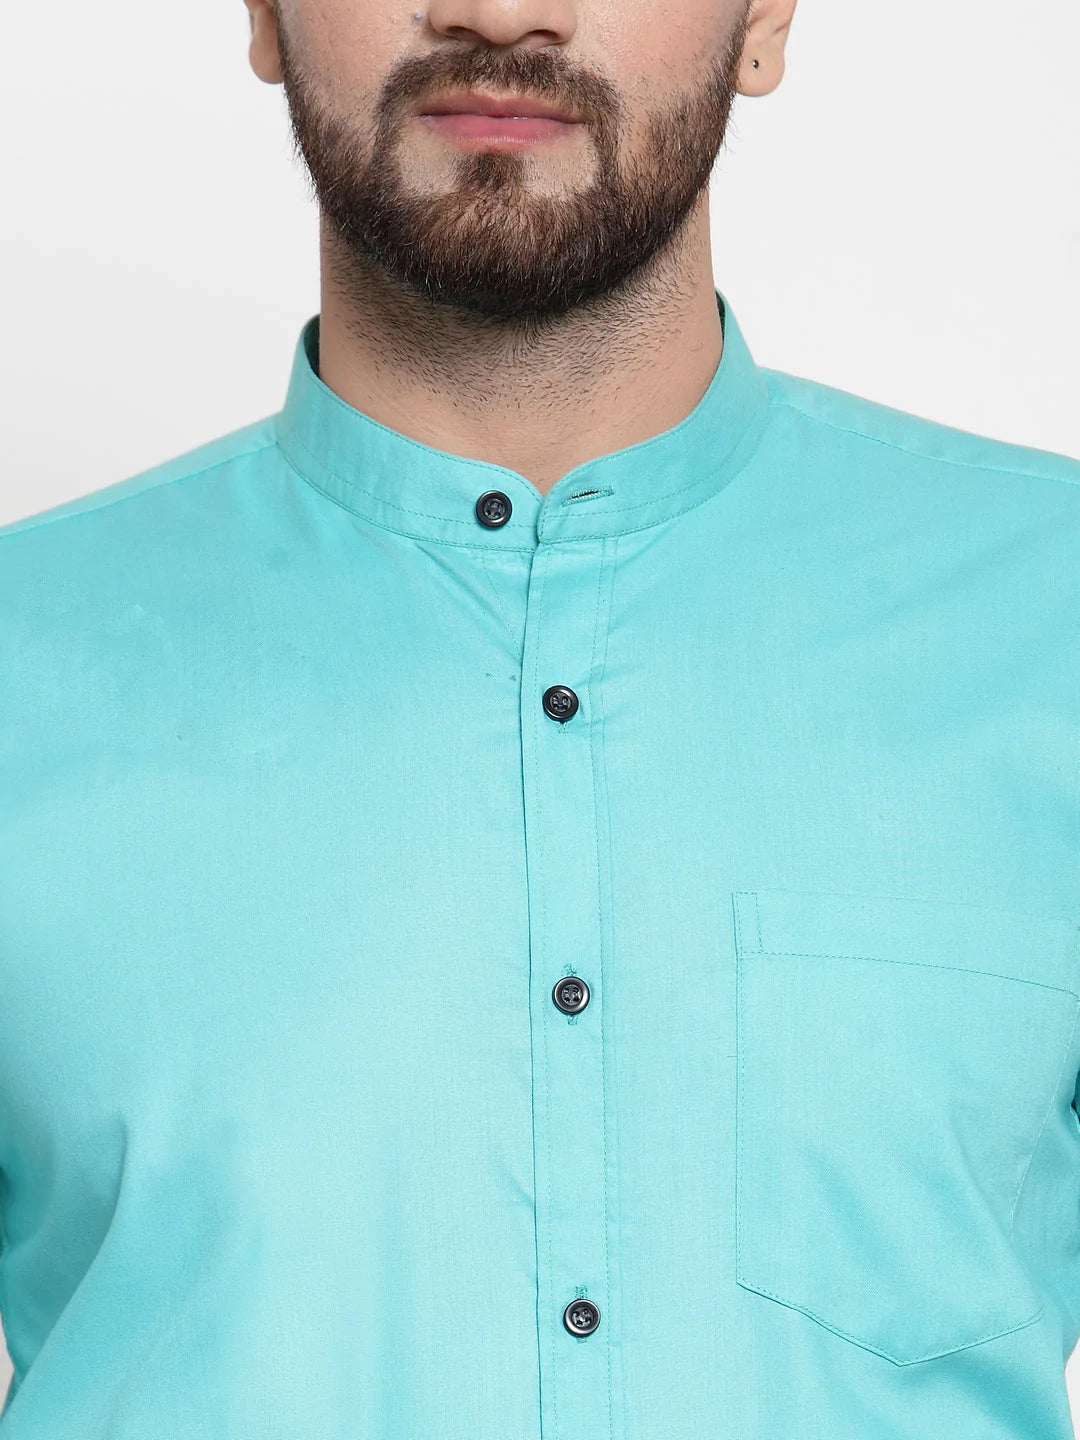 Jainish Green Men's Cotton Solid Mandarin Collar Formal Shirts ( SF 726Aqua )